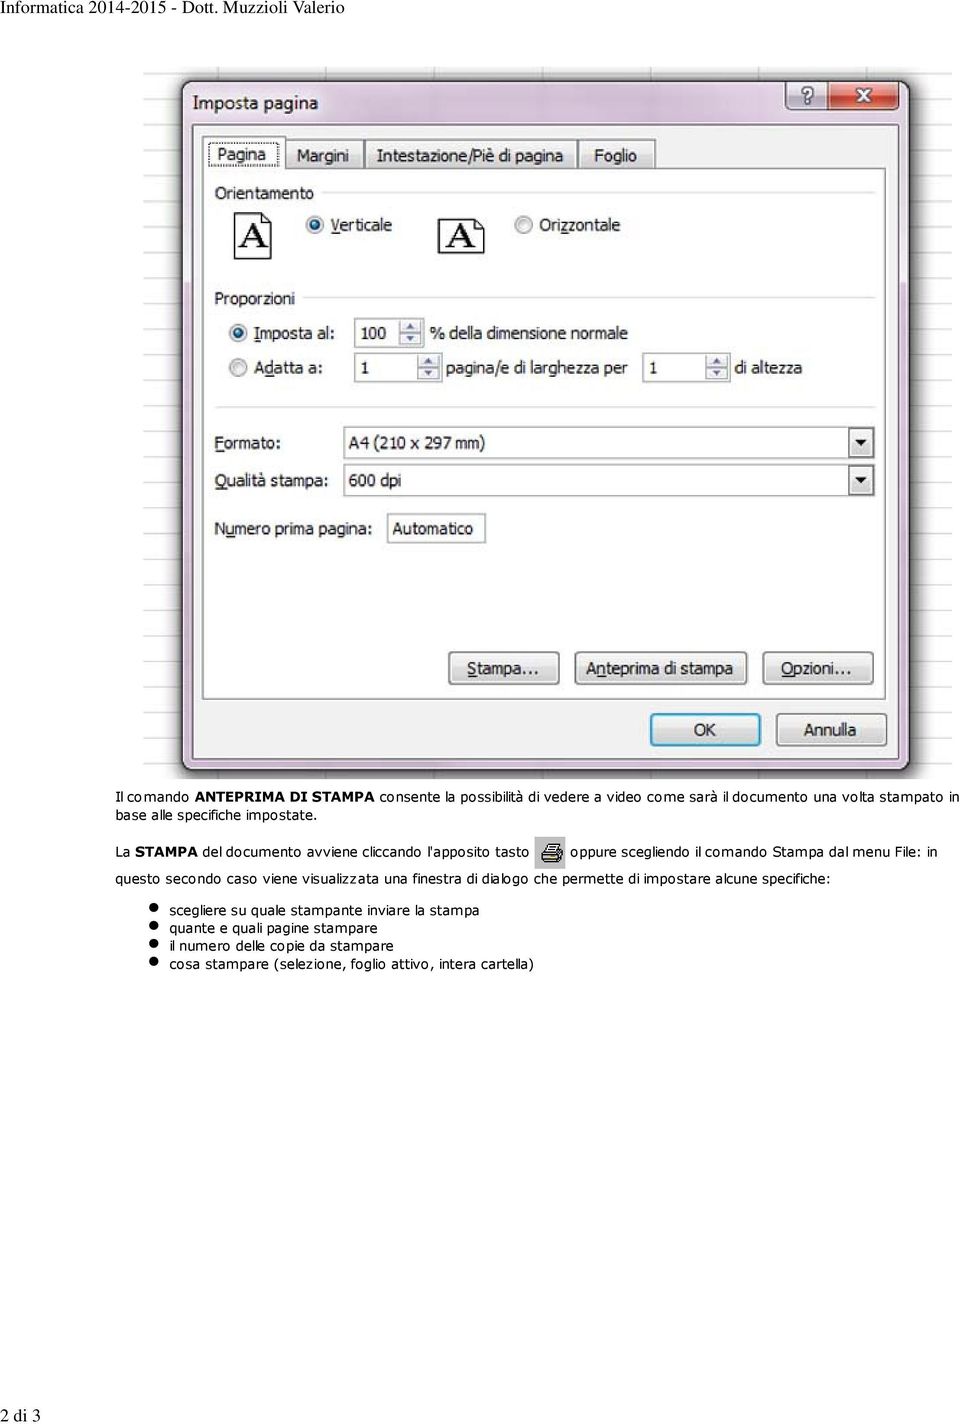 La STAMPA del documento avviene cliccando l'apposito tasto oppure scegliendo il comando Stampa dal menu File: in questo secondo caso